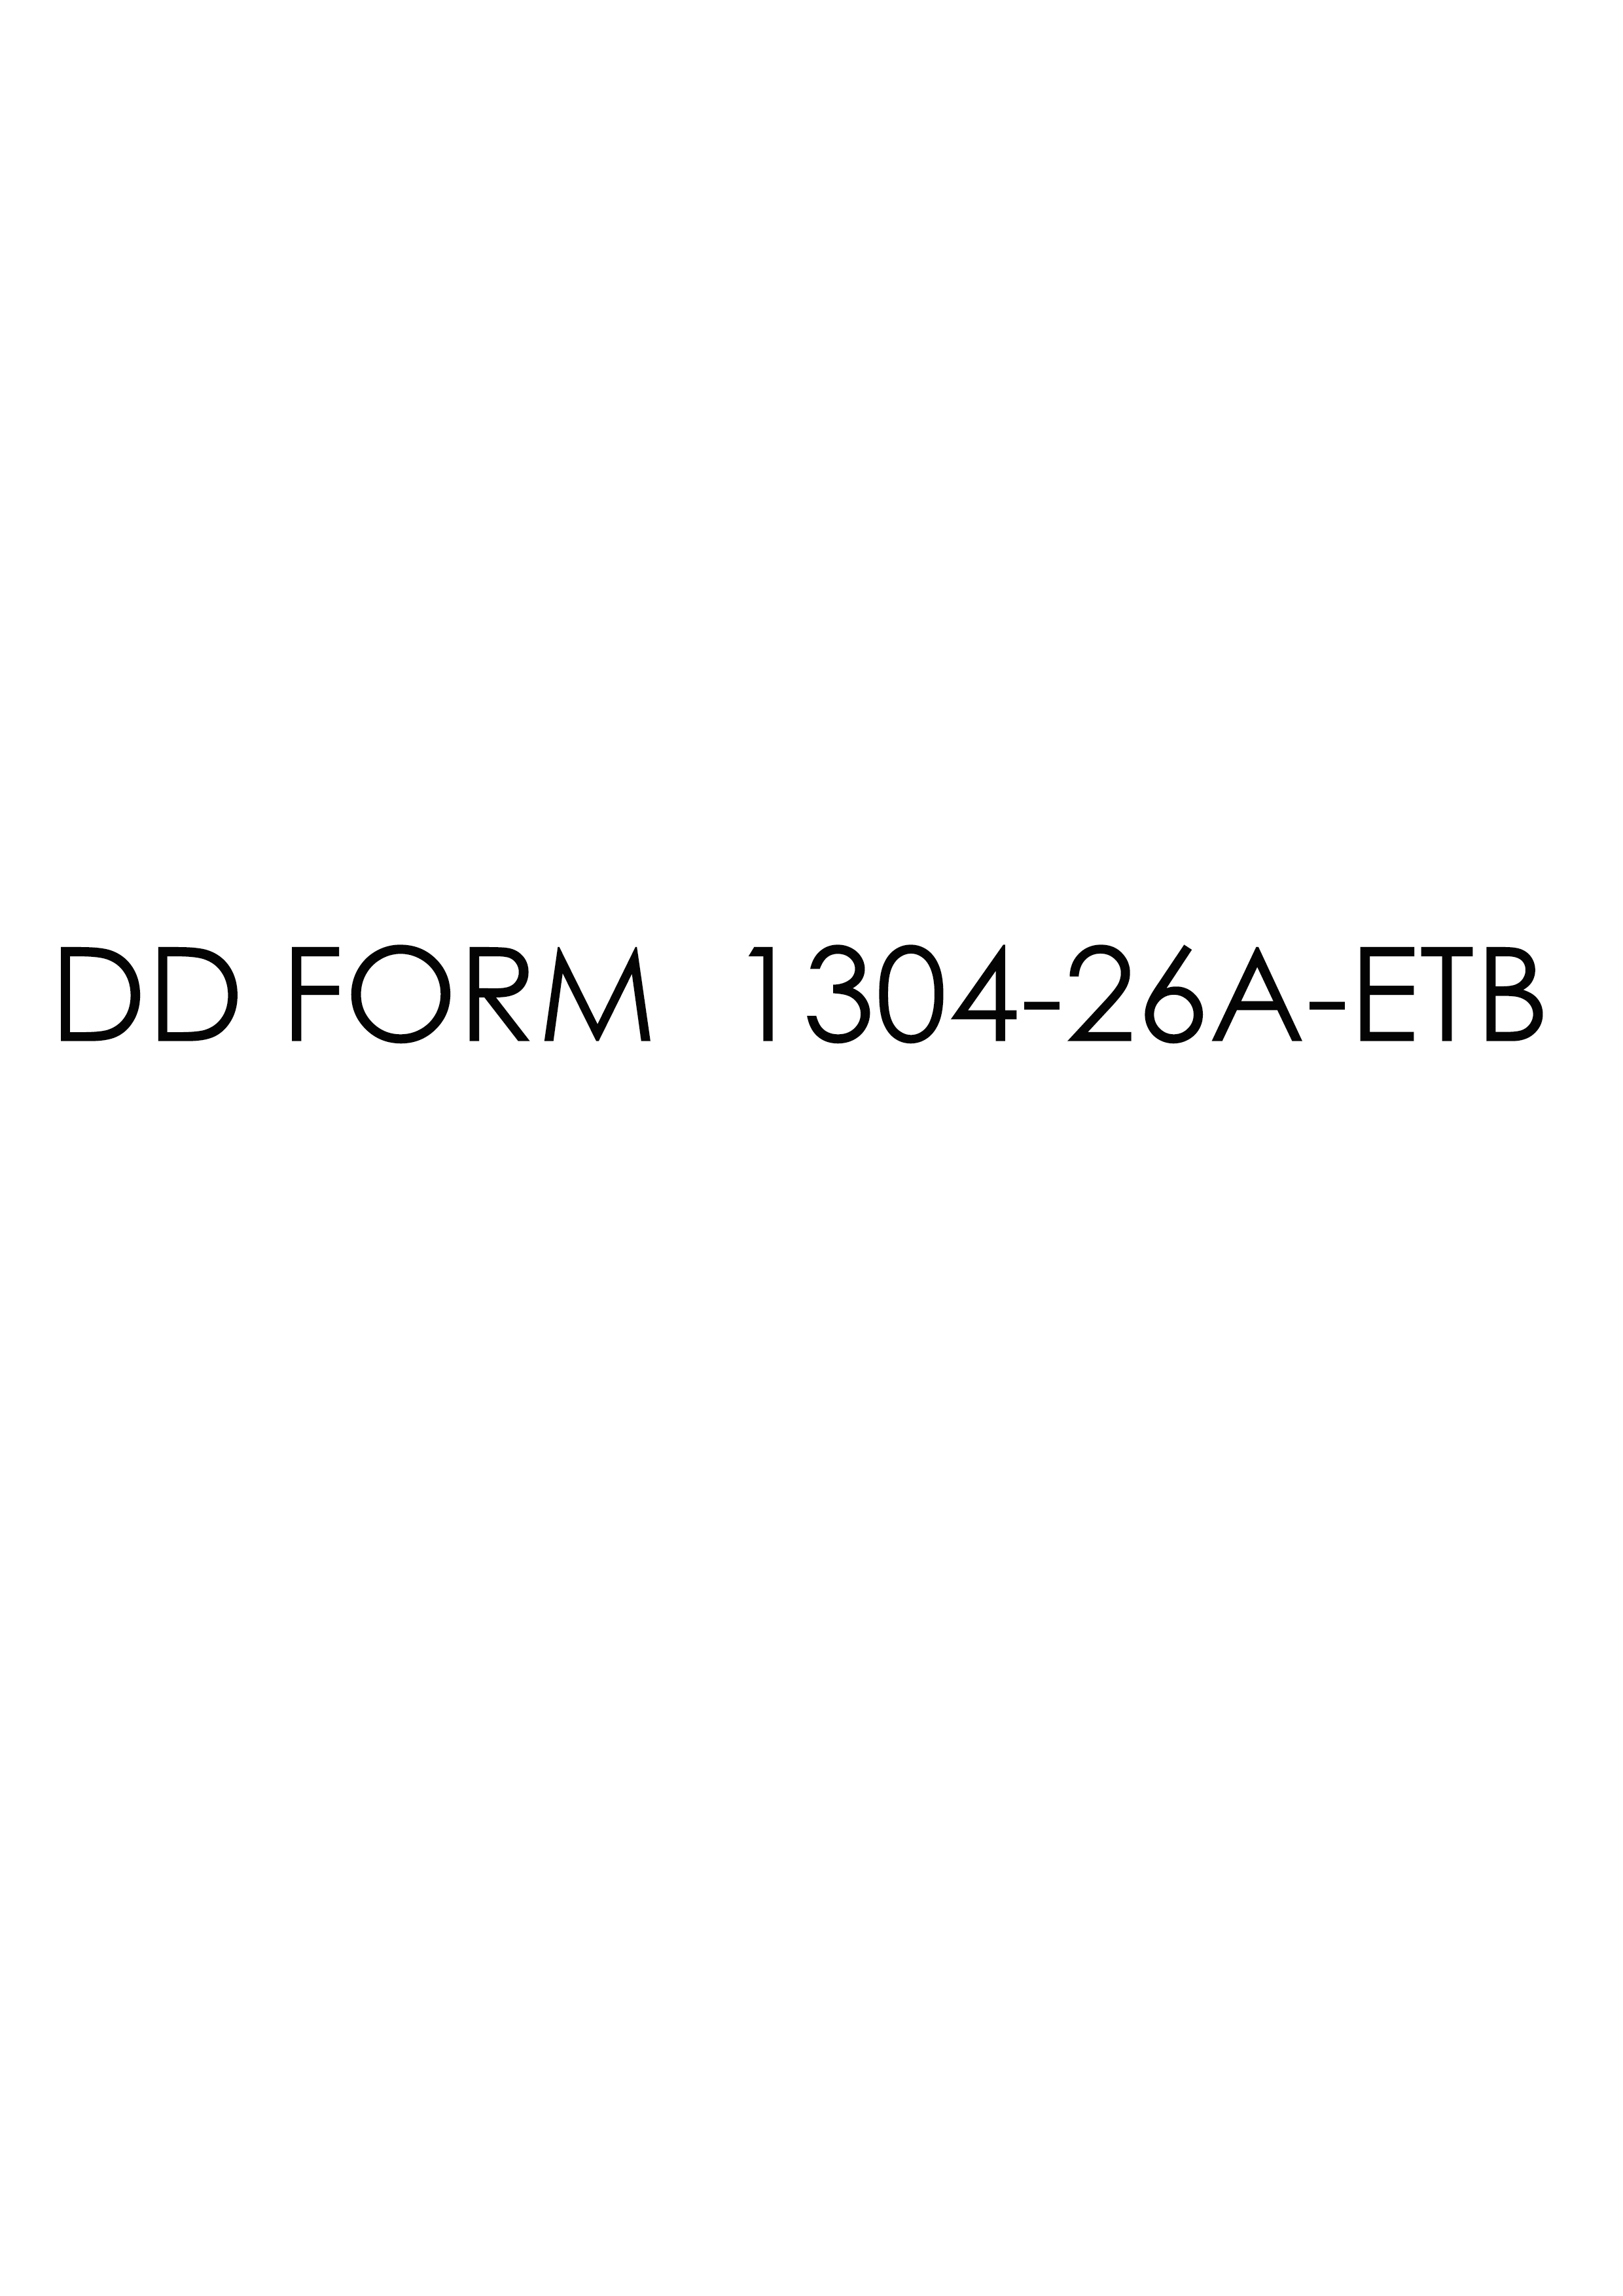 Download dd 1304-26A-ETB Form